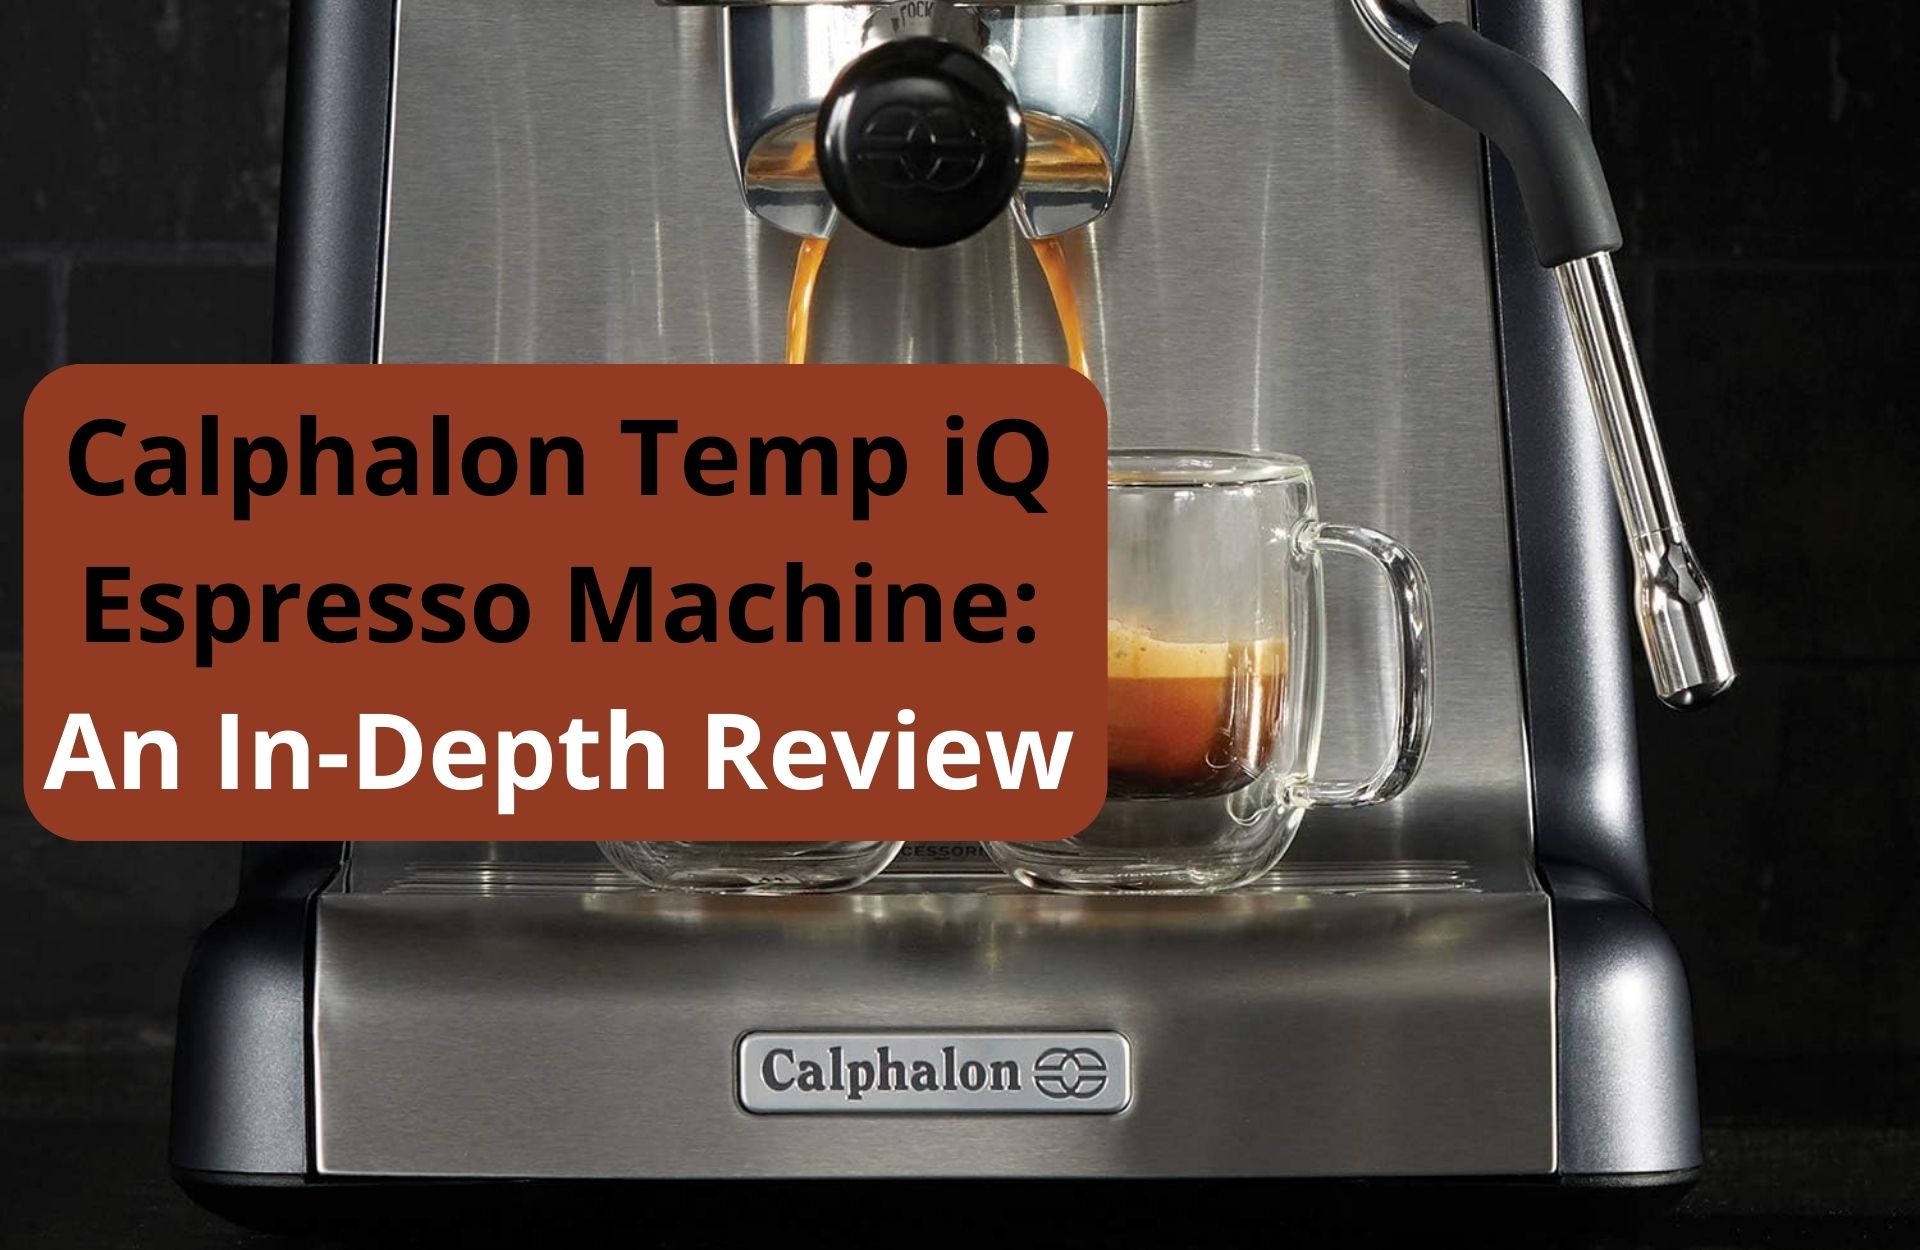 The Calphalon Temp iQ Espresso Machine Review